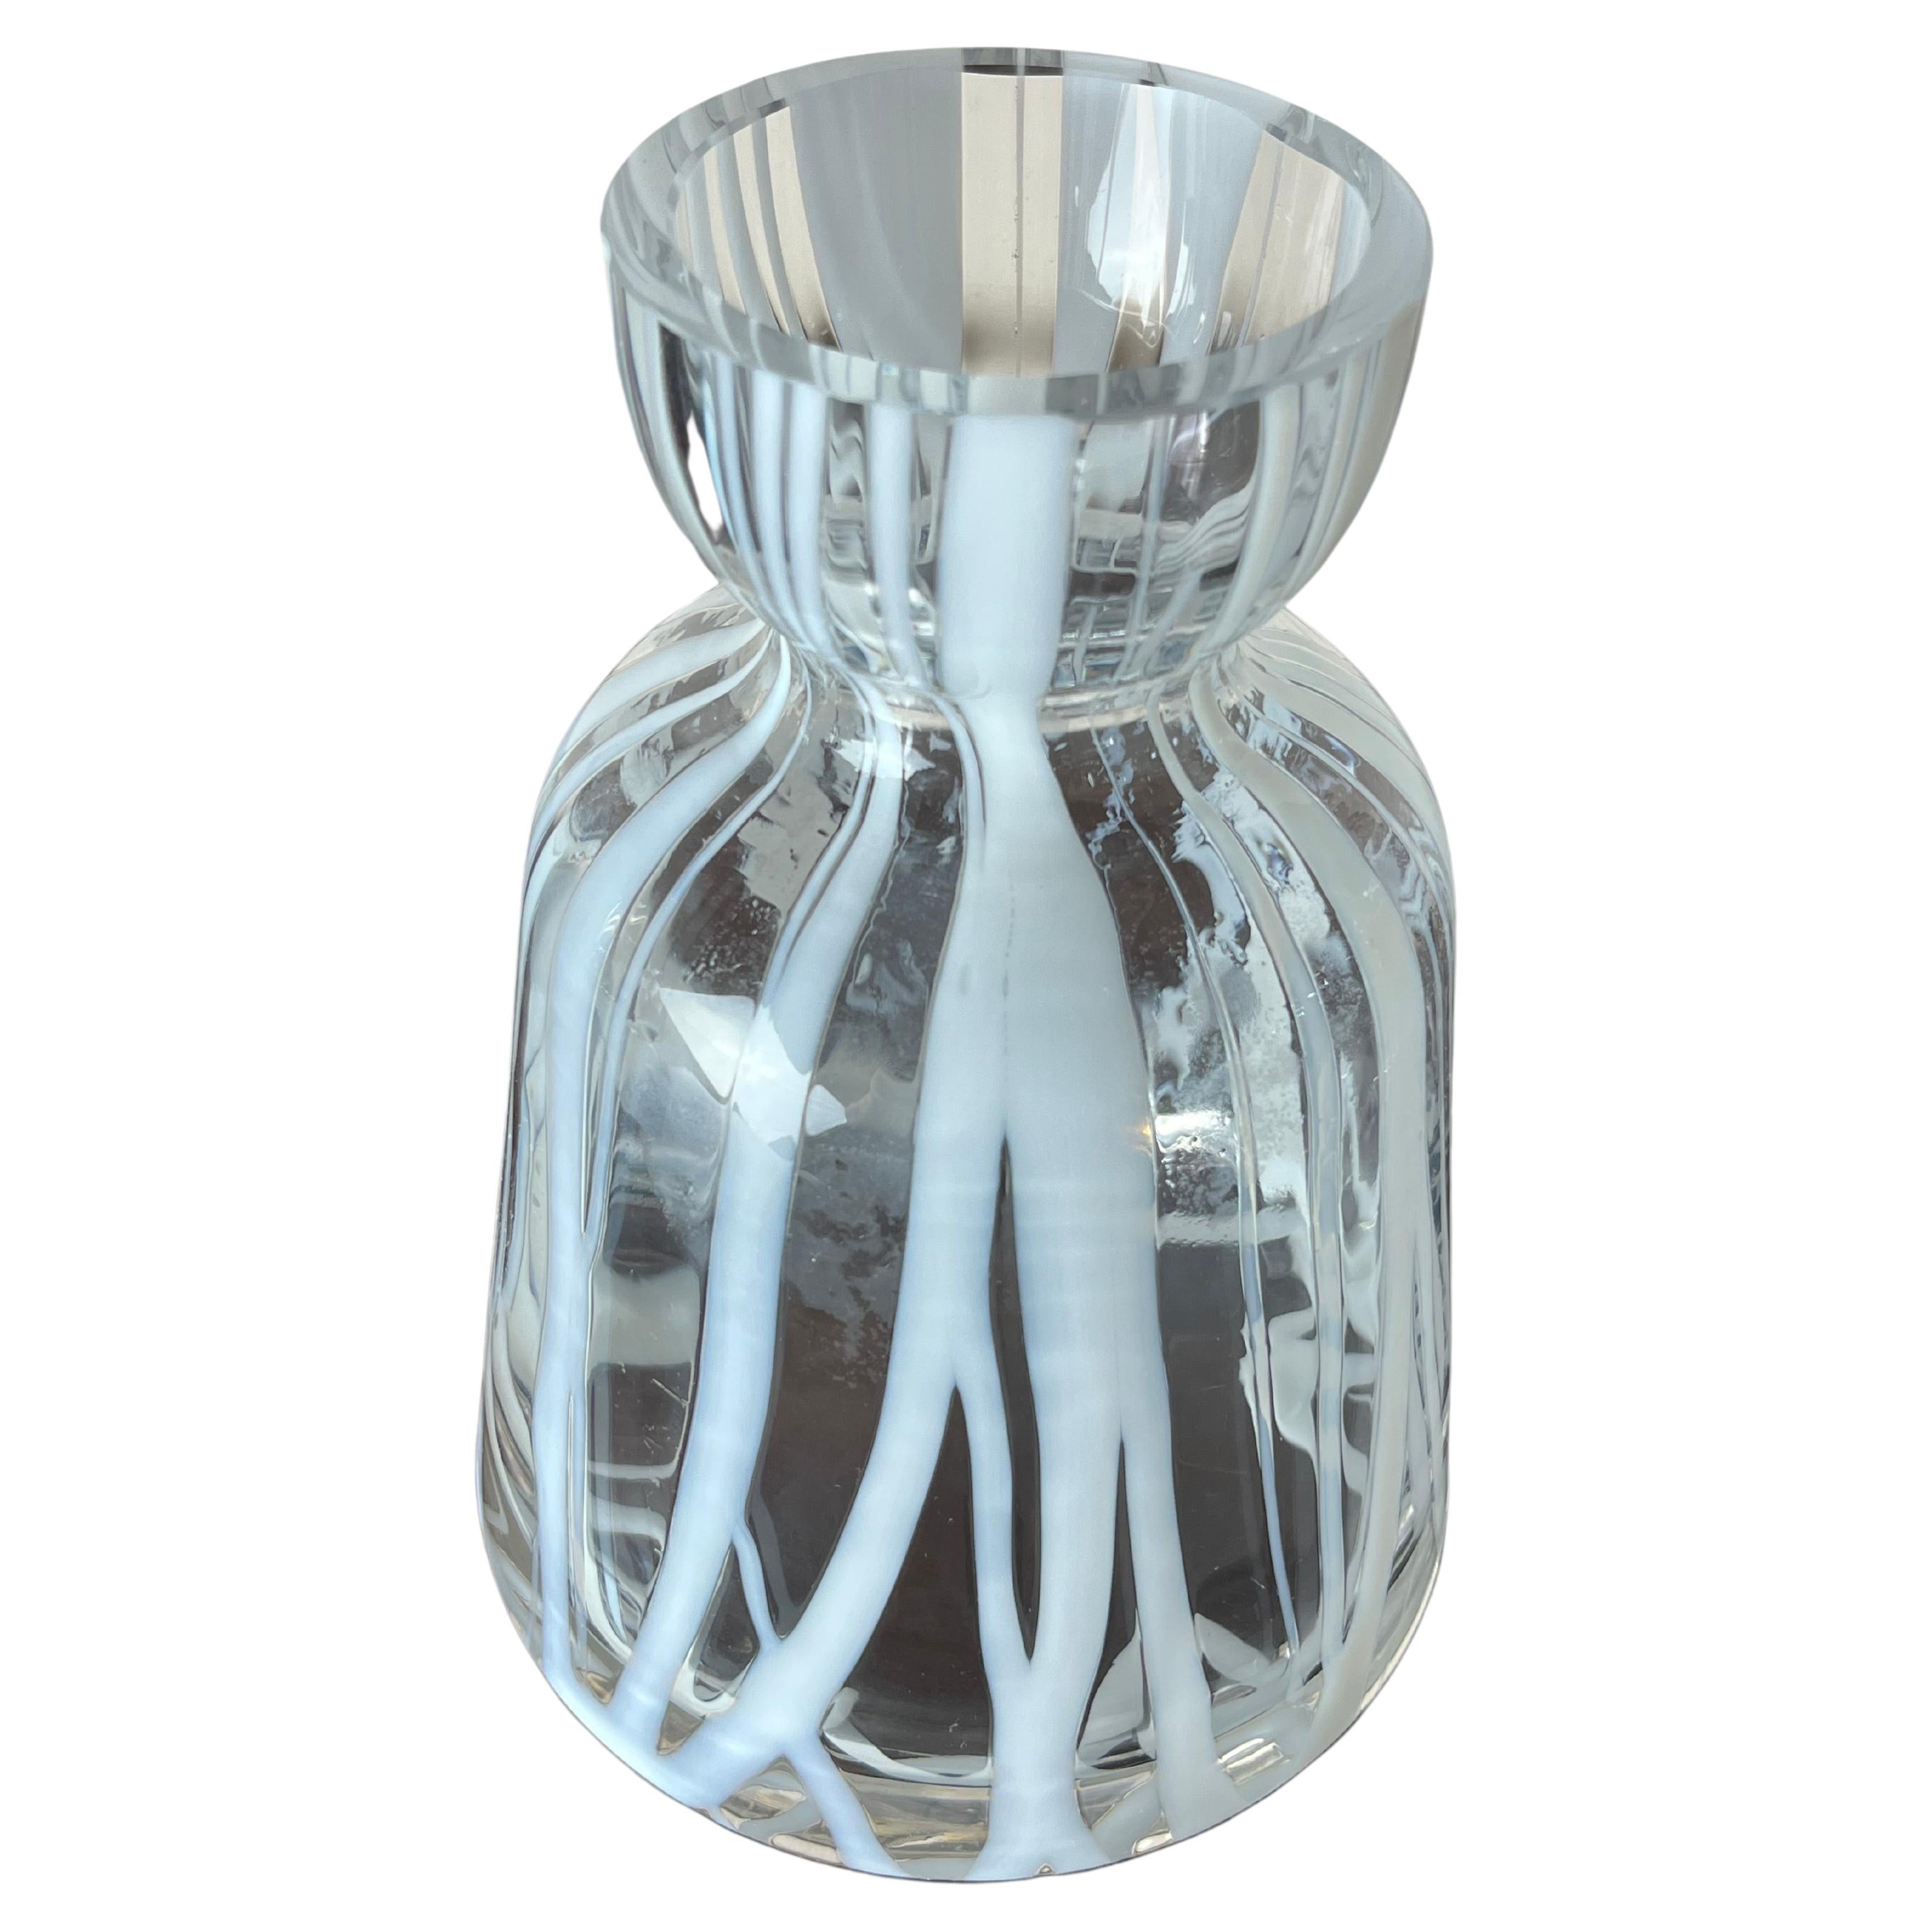 Vase en verre de Murano, Italie, années 1960
Trouvé dans un appartement noble. Il est intact et en bon état. Vous pouvez observer de petites bulles d'air à l'intérieur du verre. Cela certifie l'authenticité d'un produit artisanal, typique du verre